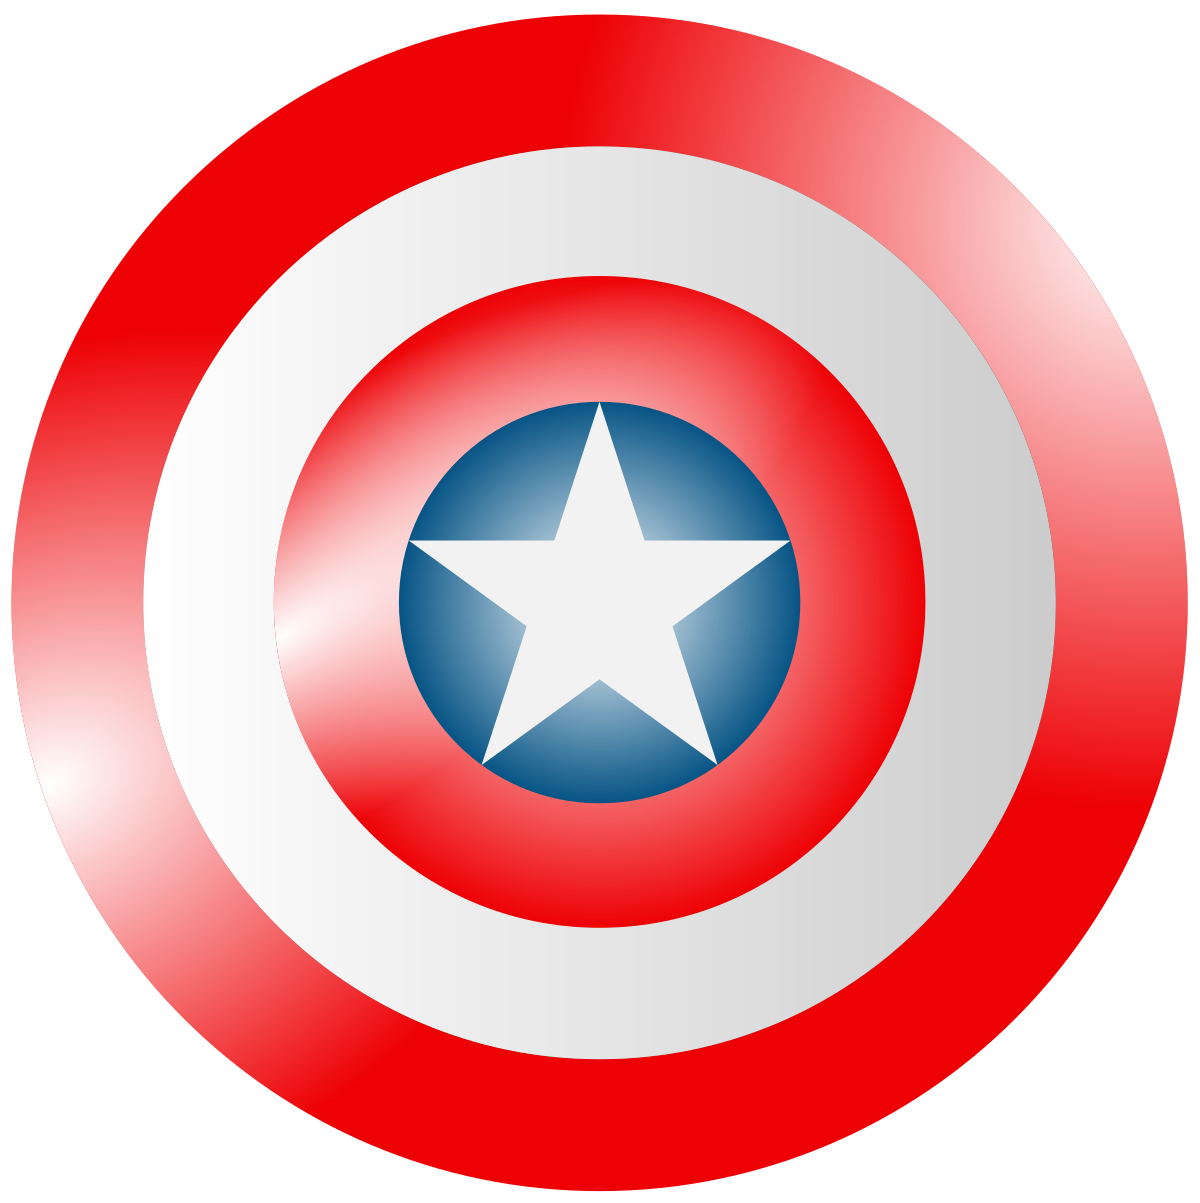 File:Captain America's shield.svg - Wikipedia